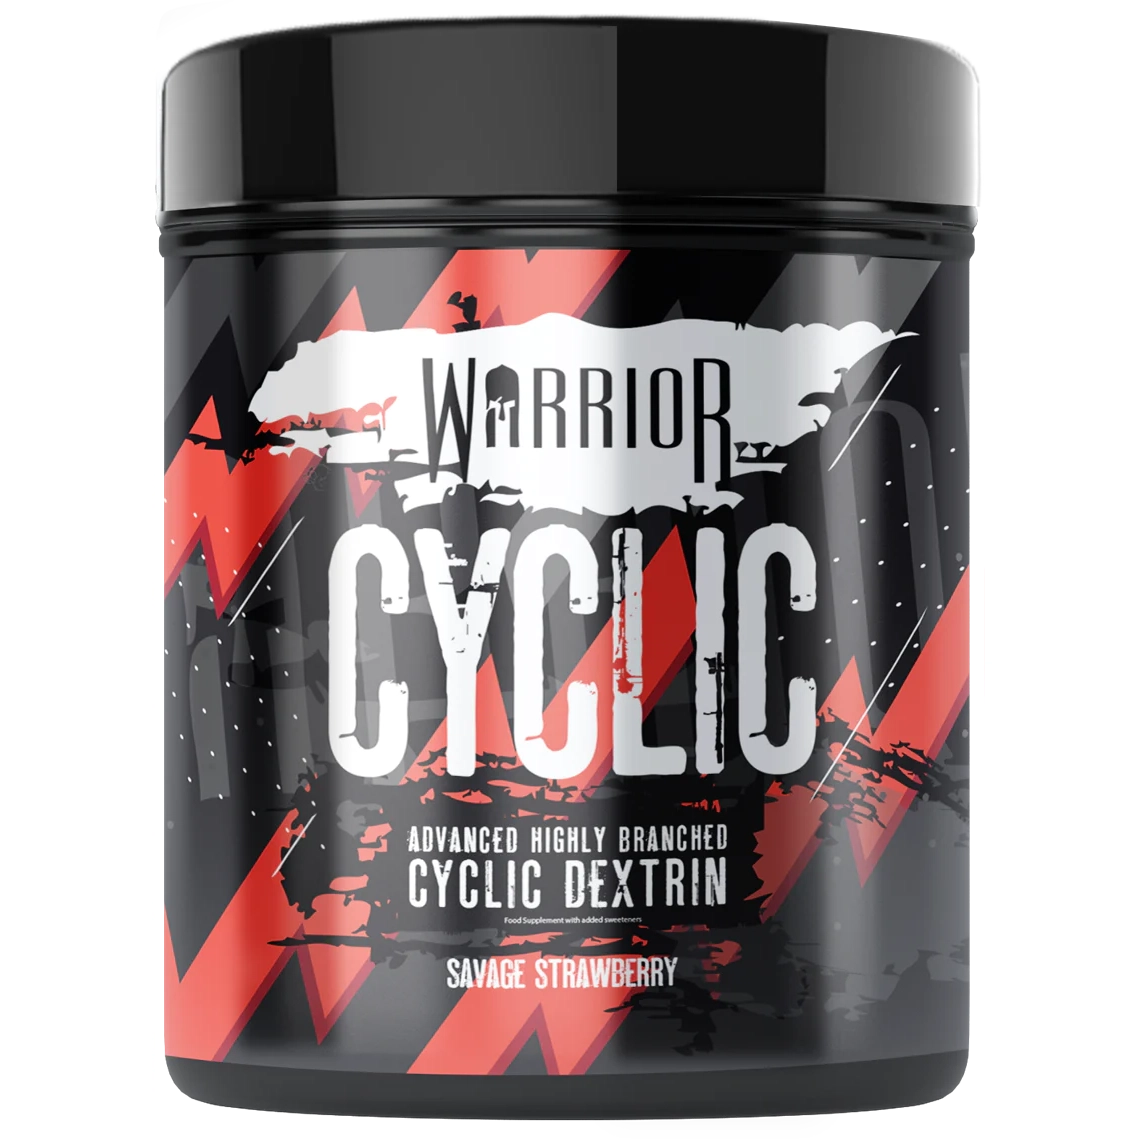 Warrior - Cyclic Dextrin powder